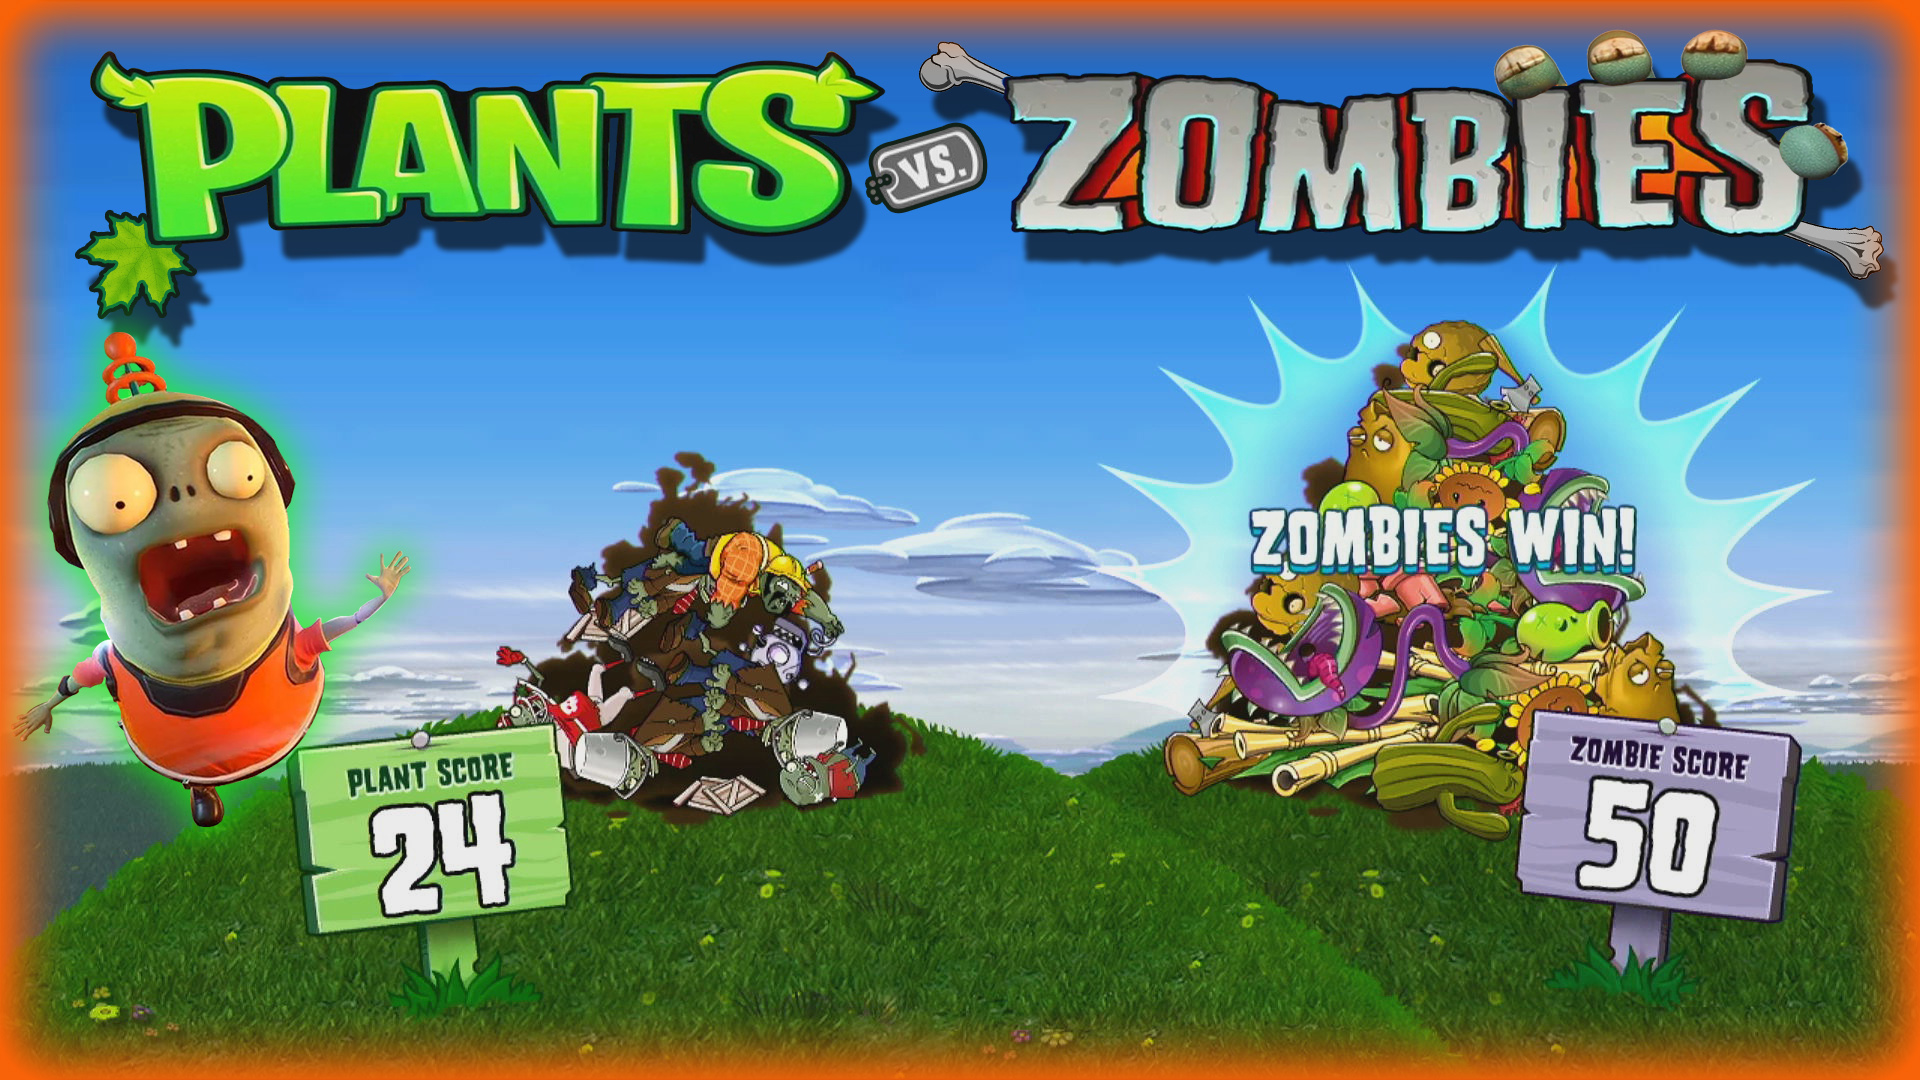 ➖☠️➖☠️➖☠️➖☠️➖☠️➖☠️➖☠️➖☠️➖☠️➖☠️➖☠️➖☠️➖☠️➖☠️➖☠️➖☠️ #PLANTSVSZOMBIES #plants #zombies...